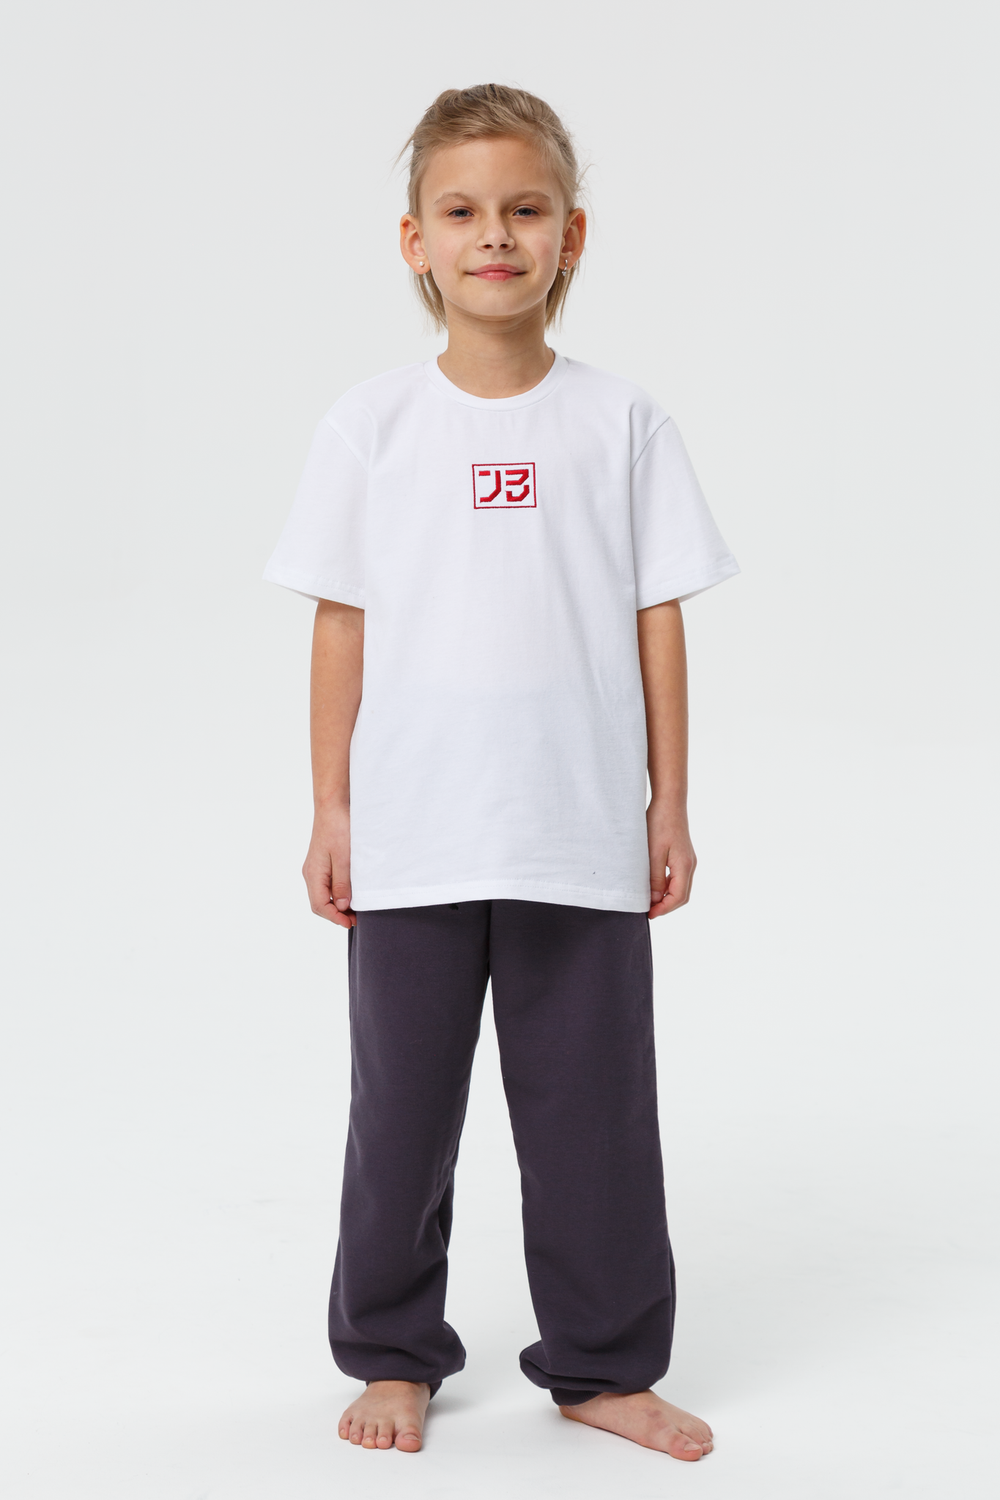 Детская футболка judo kids JB